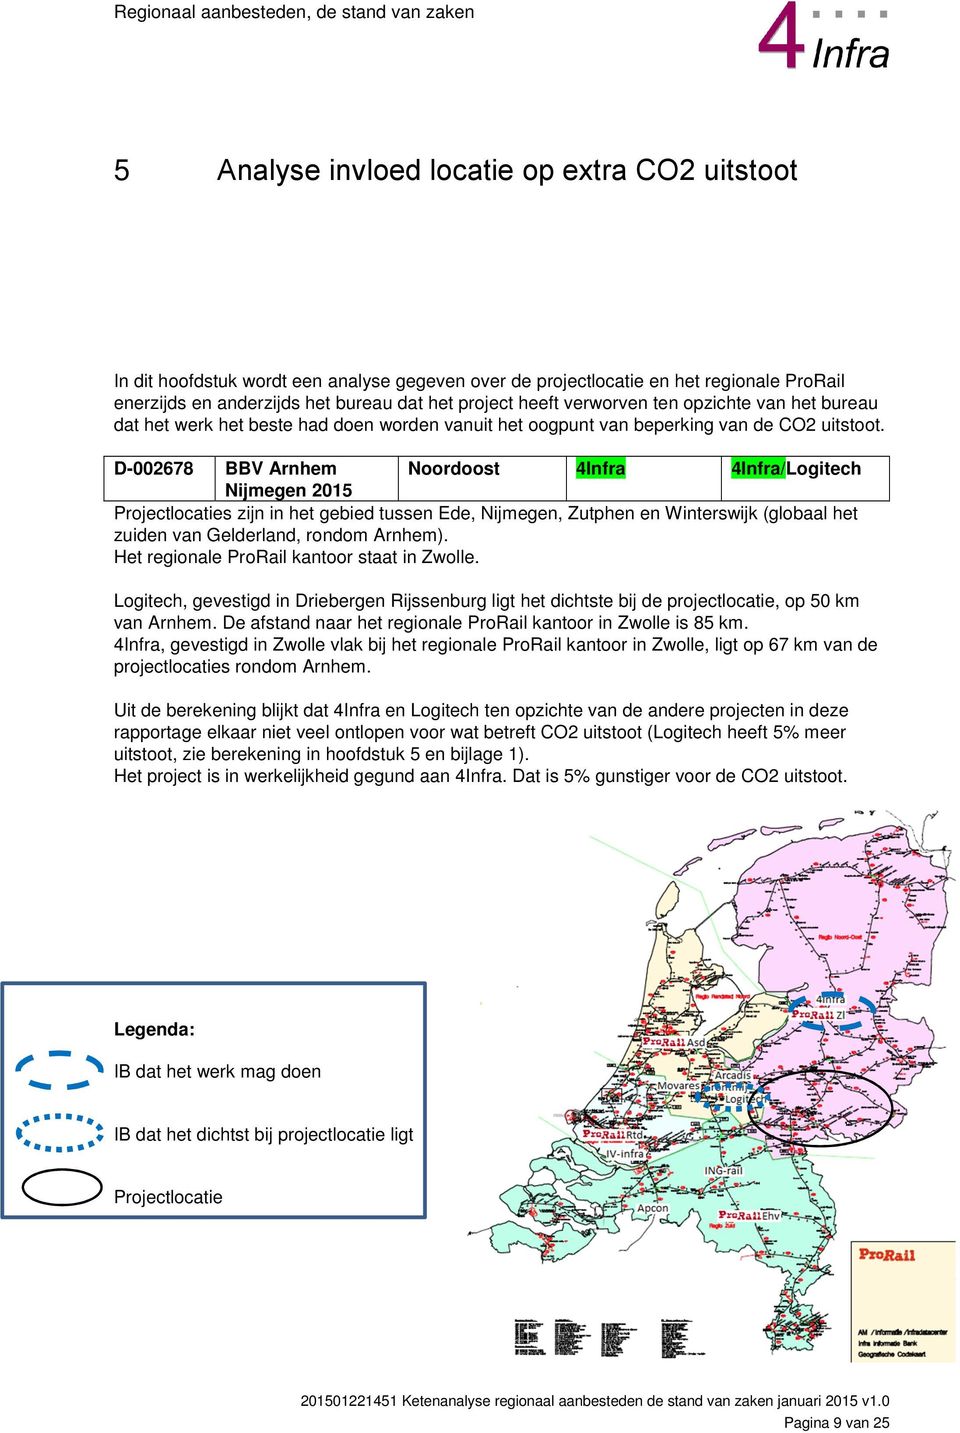 D-002678 BBV Arnhem Noordoost 4Infra 4Infra/Logitech Nijmegen 2015 Projectlocaties zijn in het gebied tussen Ede, Nijmegen, Zutphen en Winterswijk (globaal het zuiden van Gelderland, rondom Arnhem).